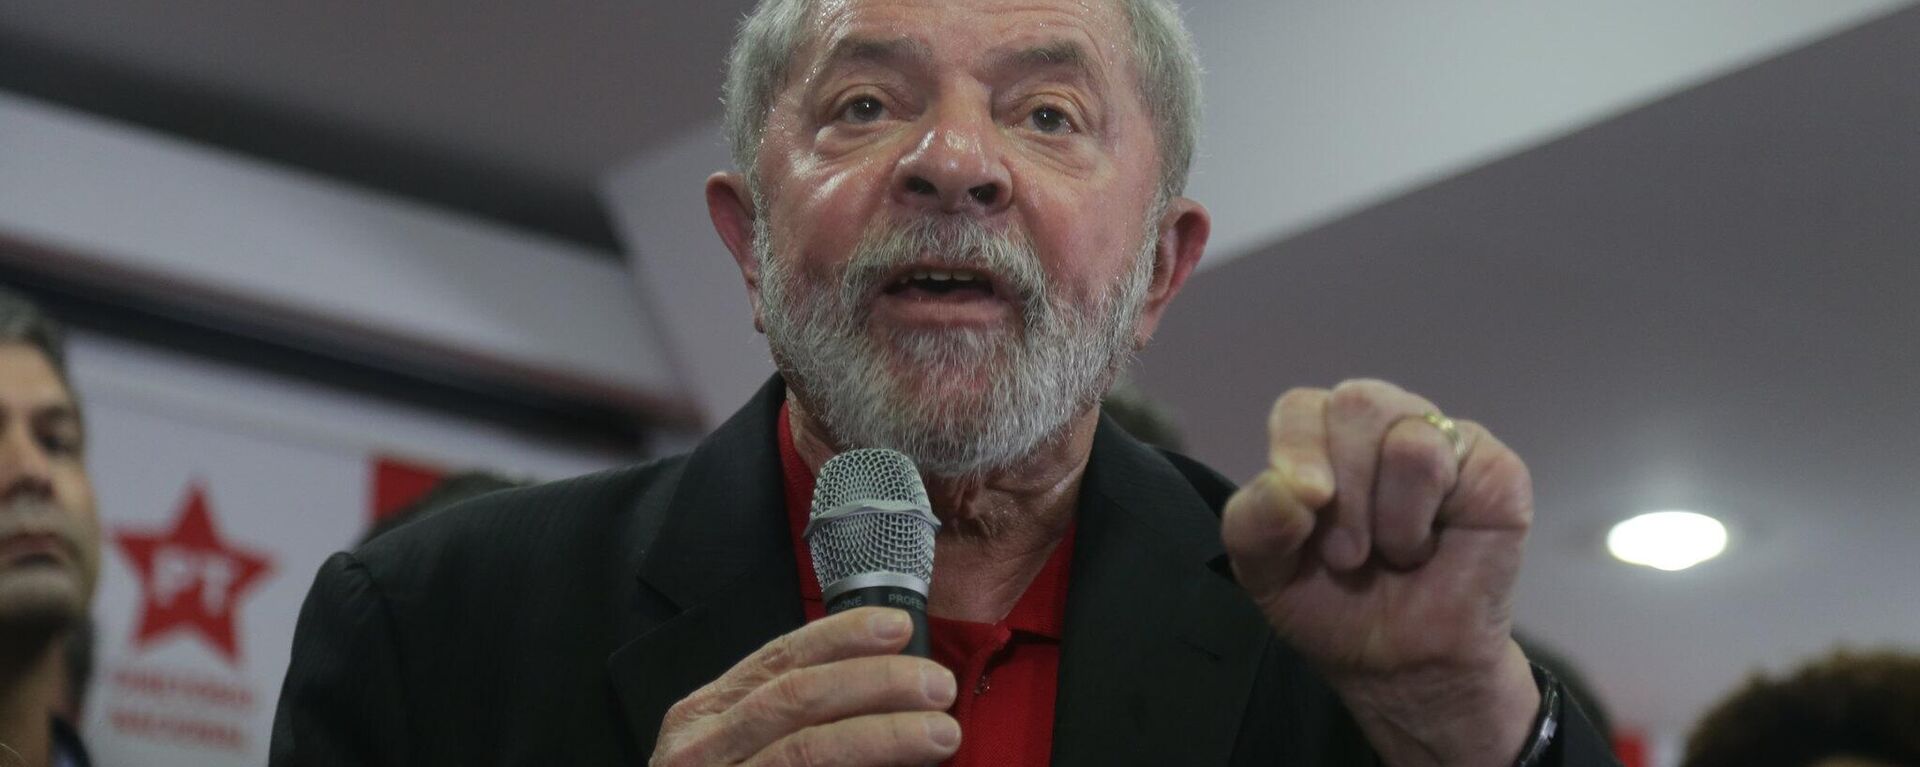 Luiz Inácio Lula da Silva, expresidente brasileño - Sputnik Mundo, 1920, 24.12.2022